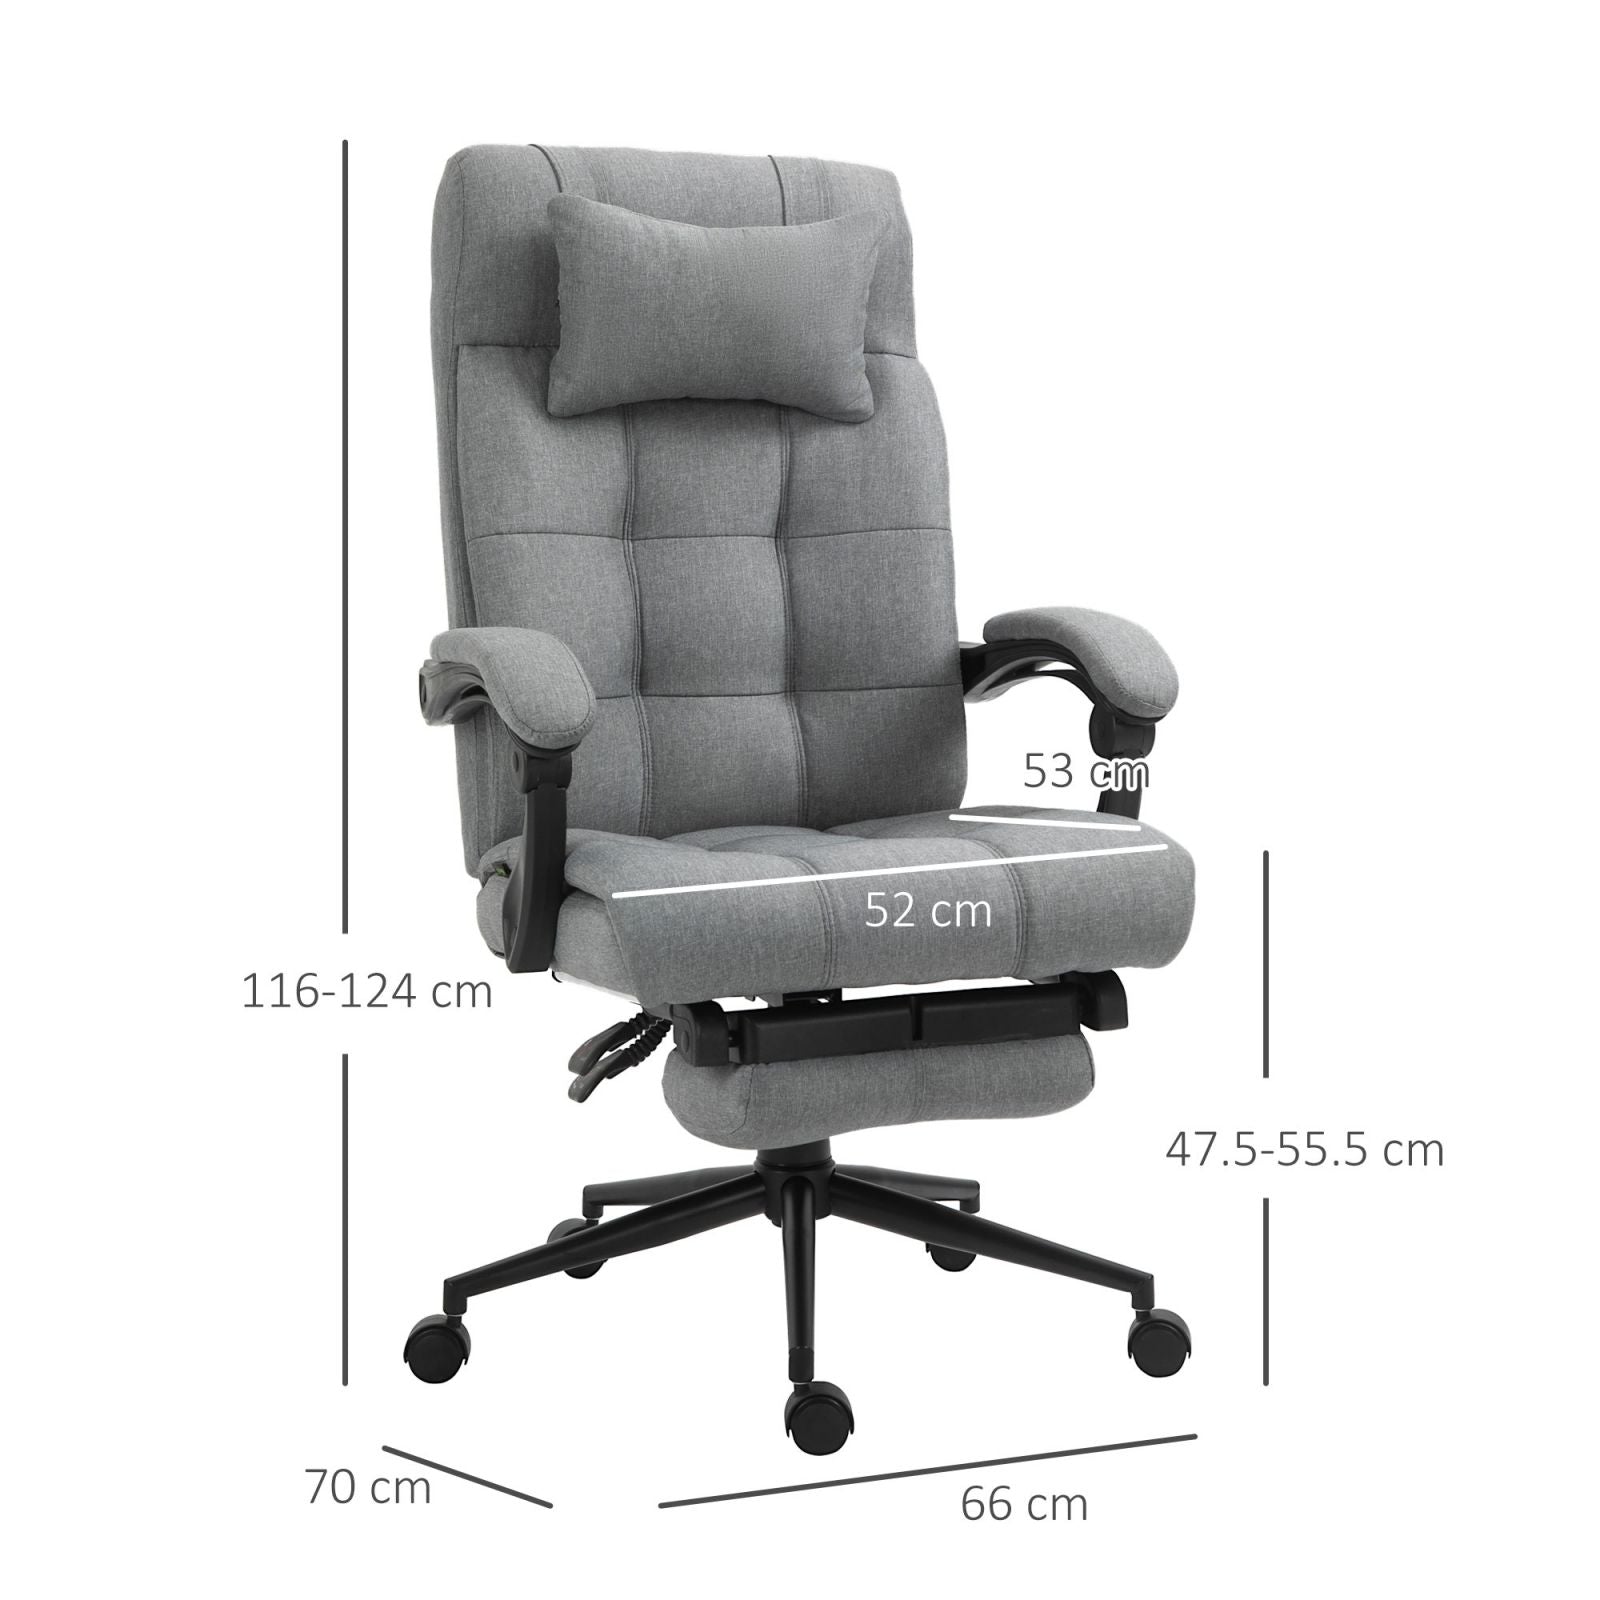 https://caldaiemurali.it/cdn/shop/products/immagine-3-easycomfort-easycomfort-sedia-da-ufficio-ergonomica-reclinabile-con-poggiatesta-e-poggiapiedi-estraibile-grigio.jpg?v=1695984063